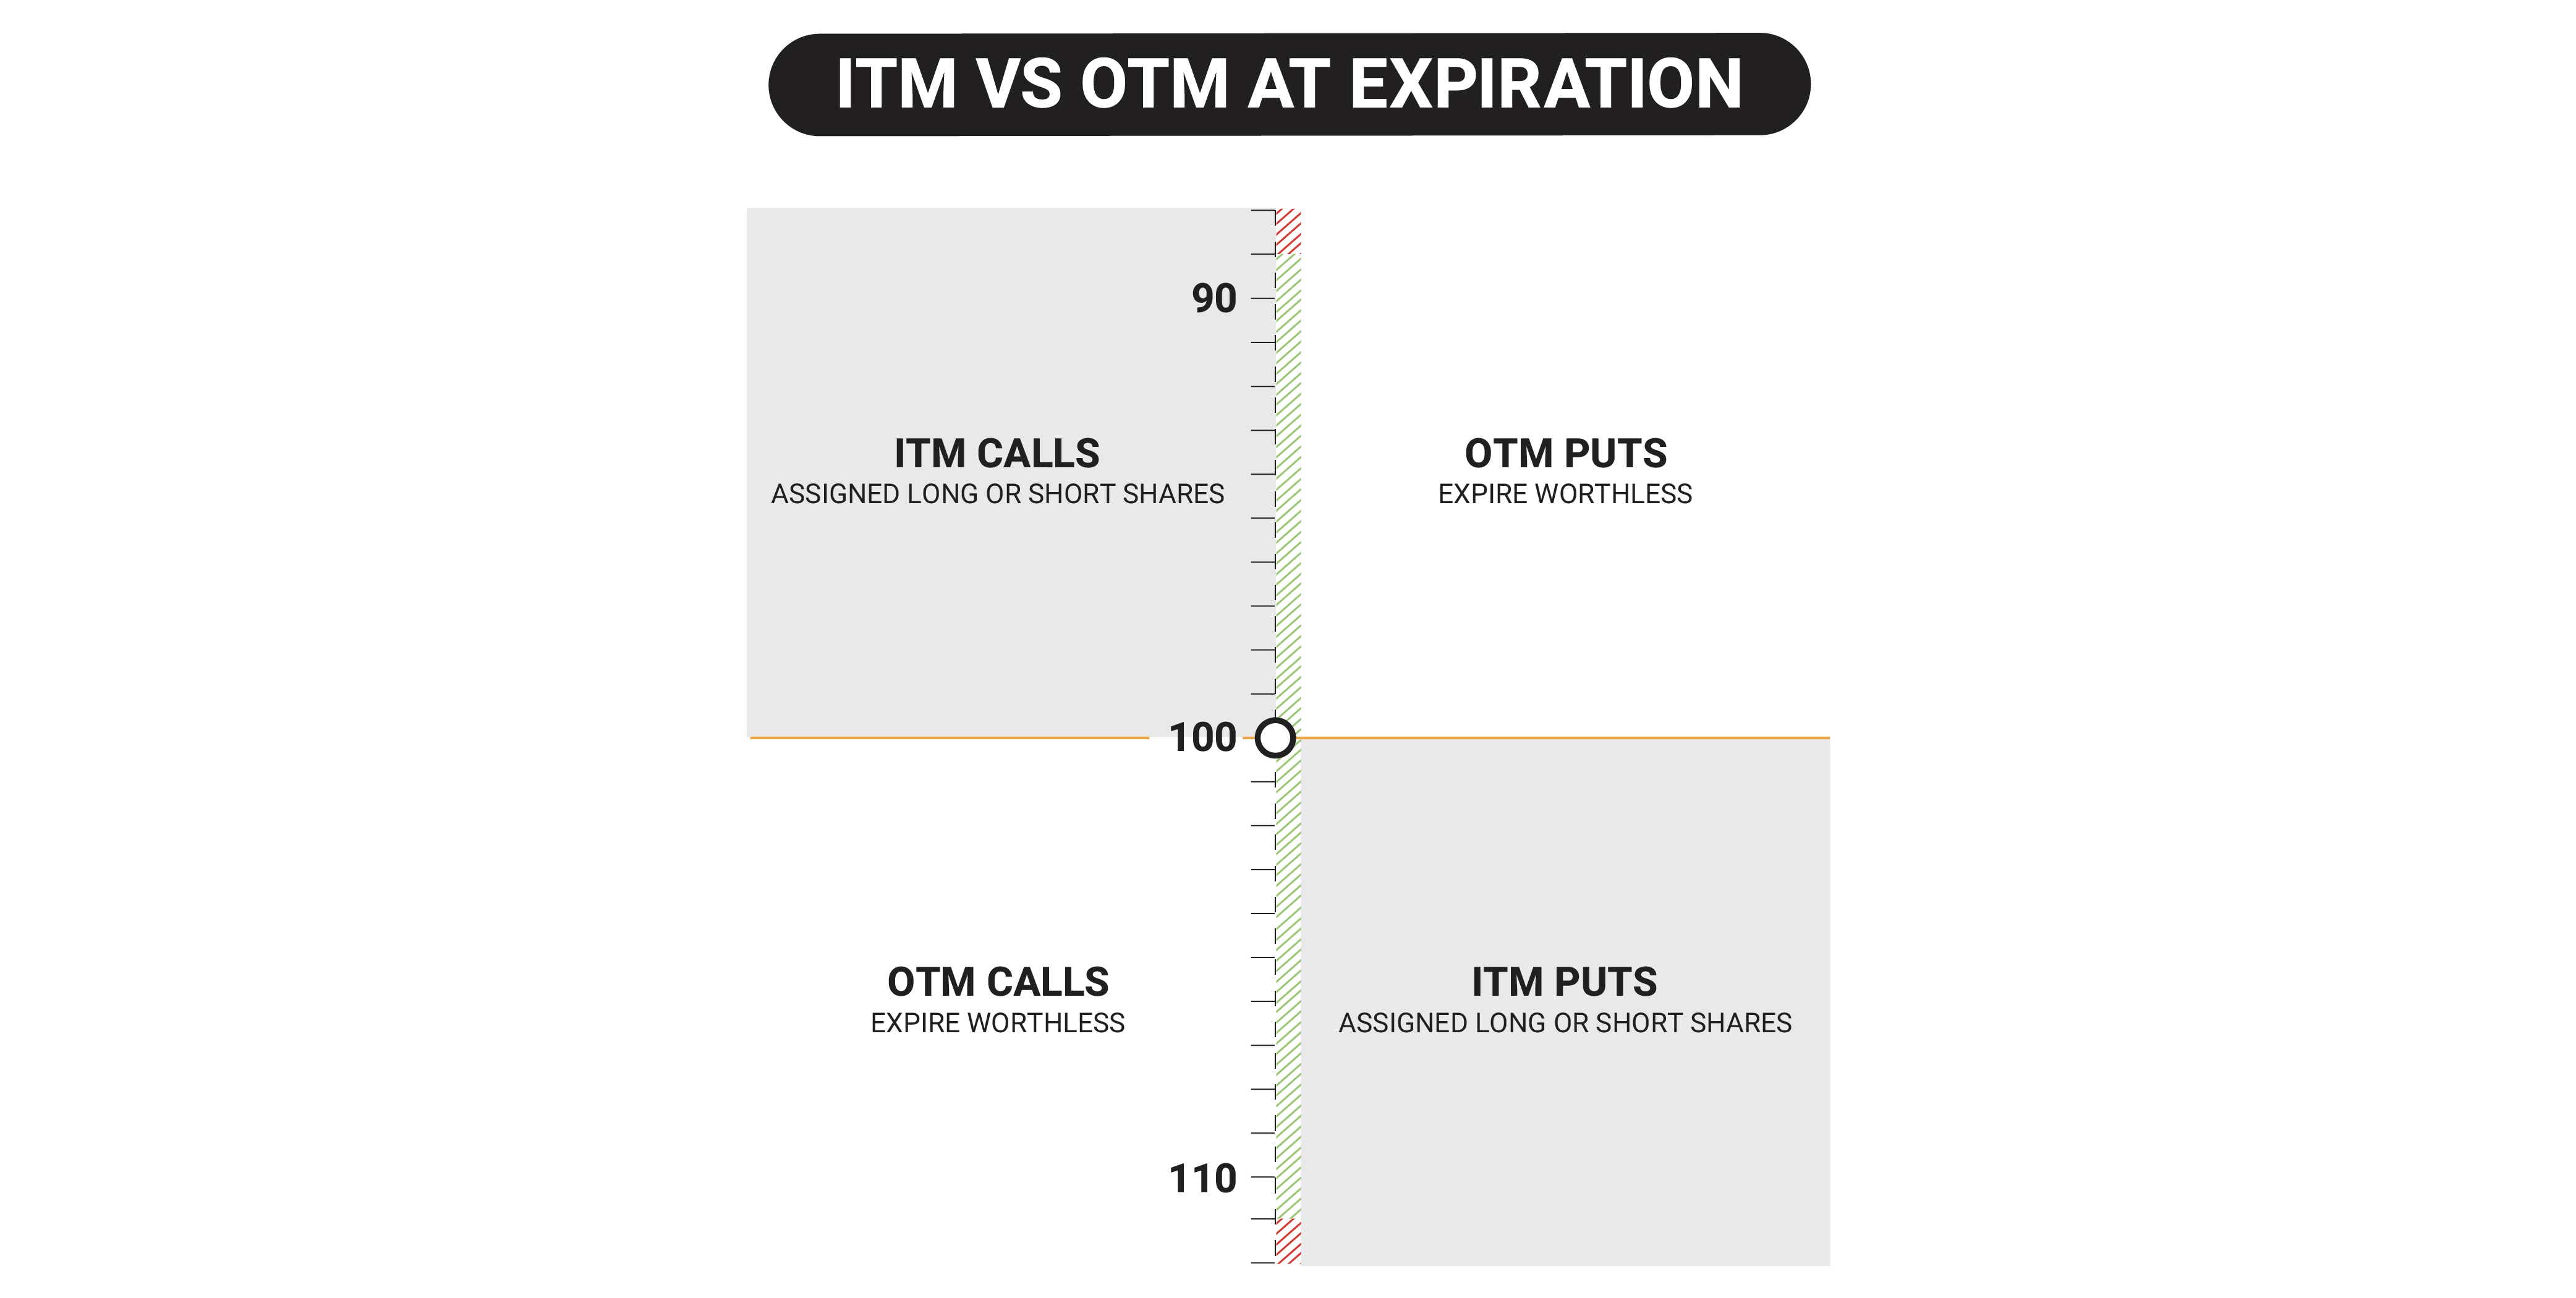 ITM vs OTM calls/puts at expiration